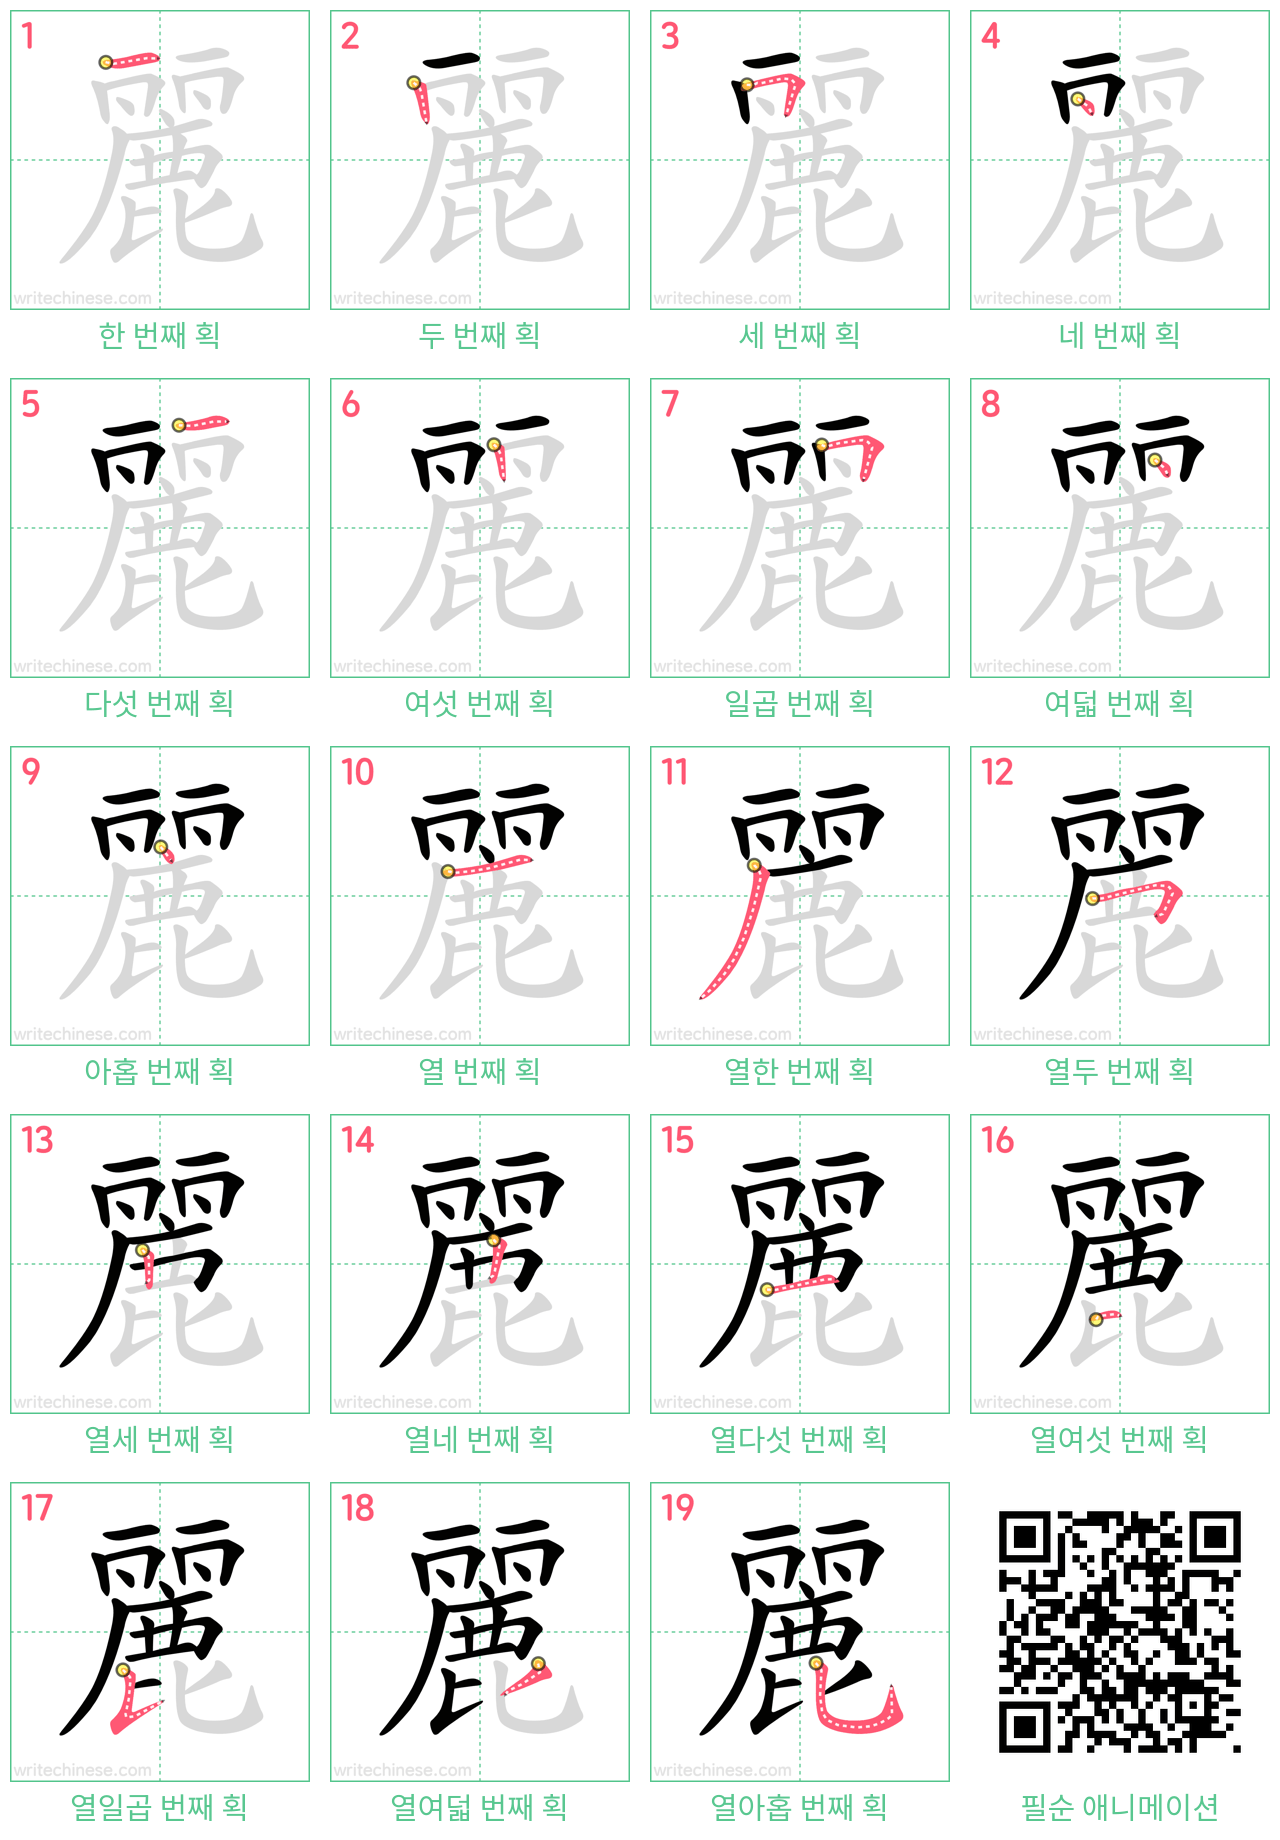 麗 step-by-step stroke order diagrams